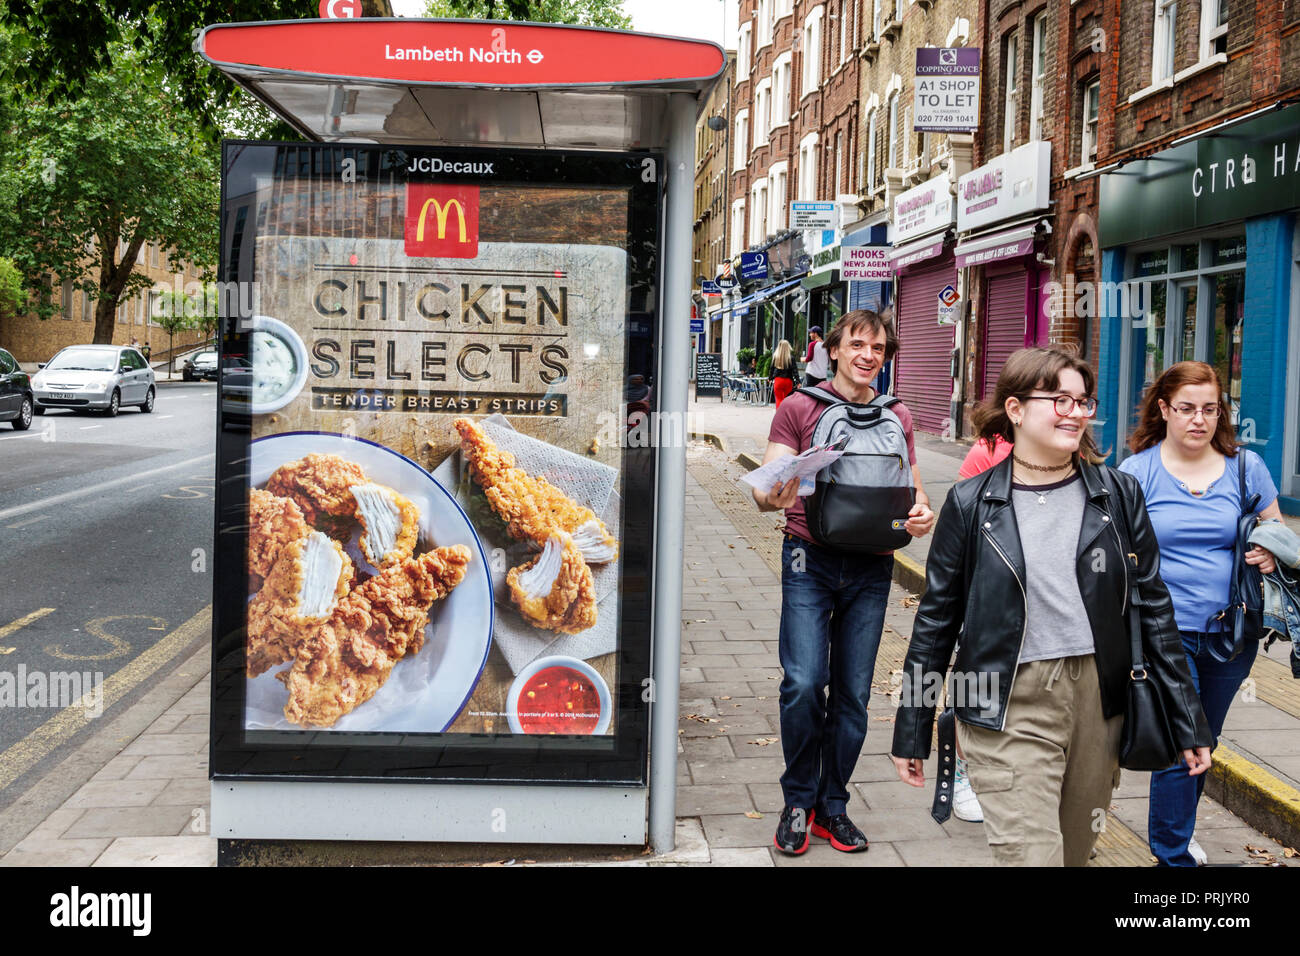 Londra Inghilterra,UK,Lambeth North Kennington Road bus stop shelter, McDonald's annuncio pubblicità poster cartellone, ragazze adolescenti pedest Foto Stock